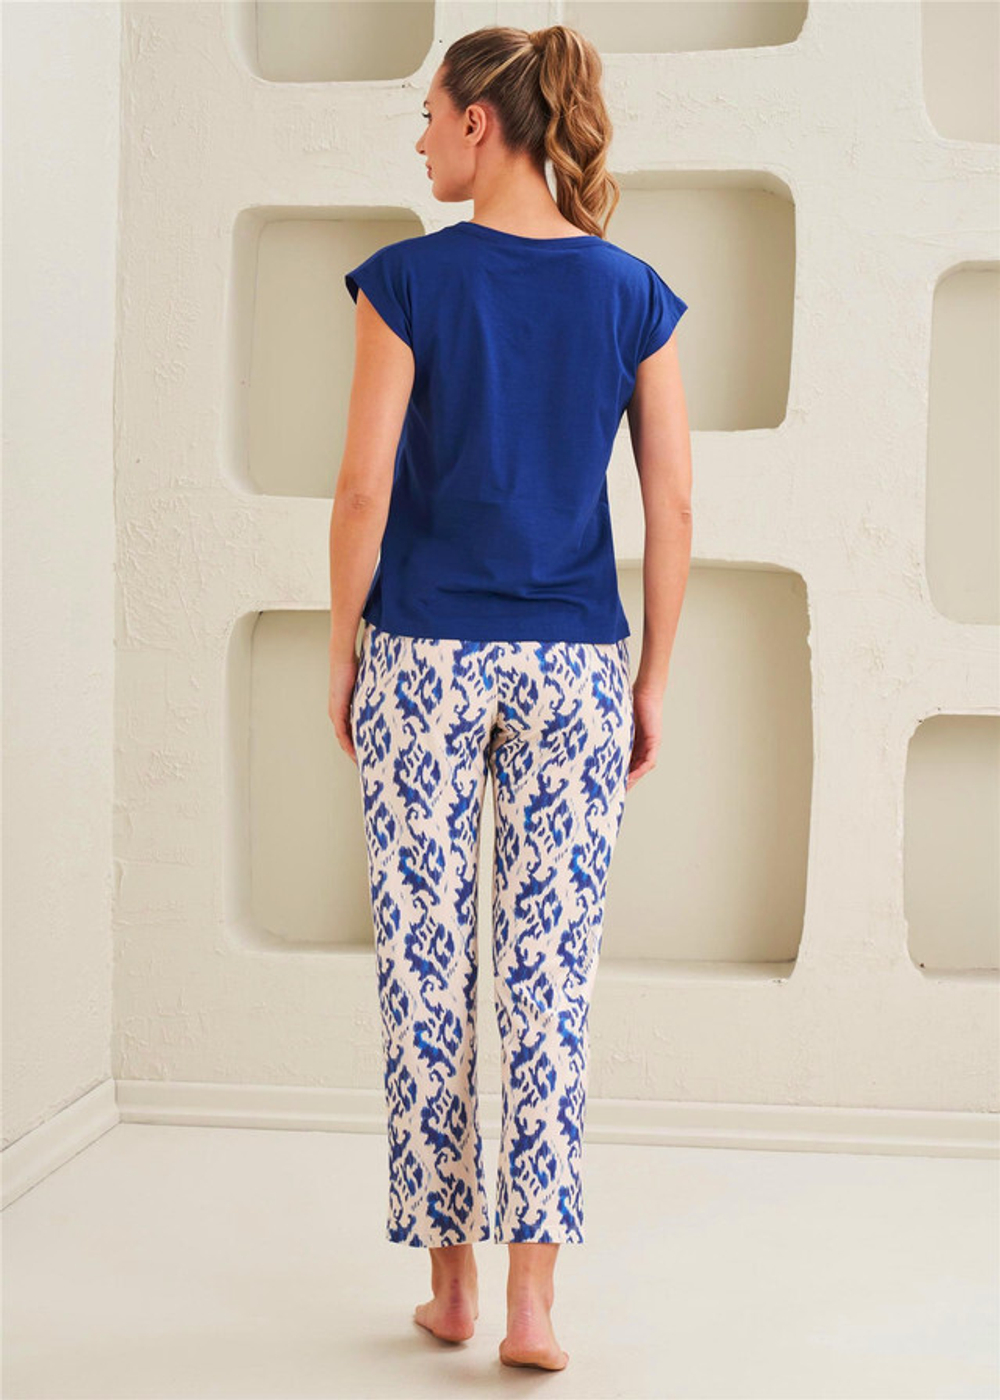 Женская Пижама 2-х предметная - Современный стиль, спортивный дух, комфорт - Сакс-голубой - 10811